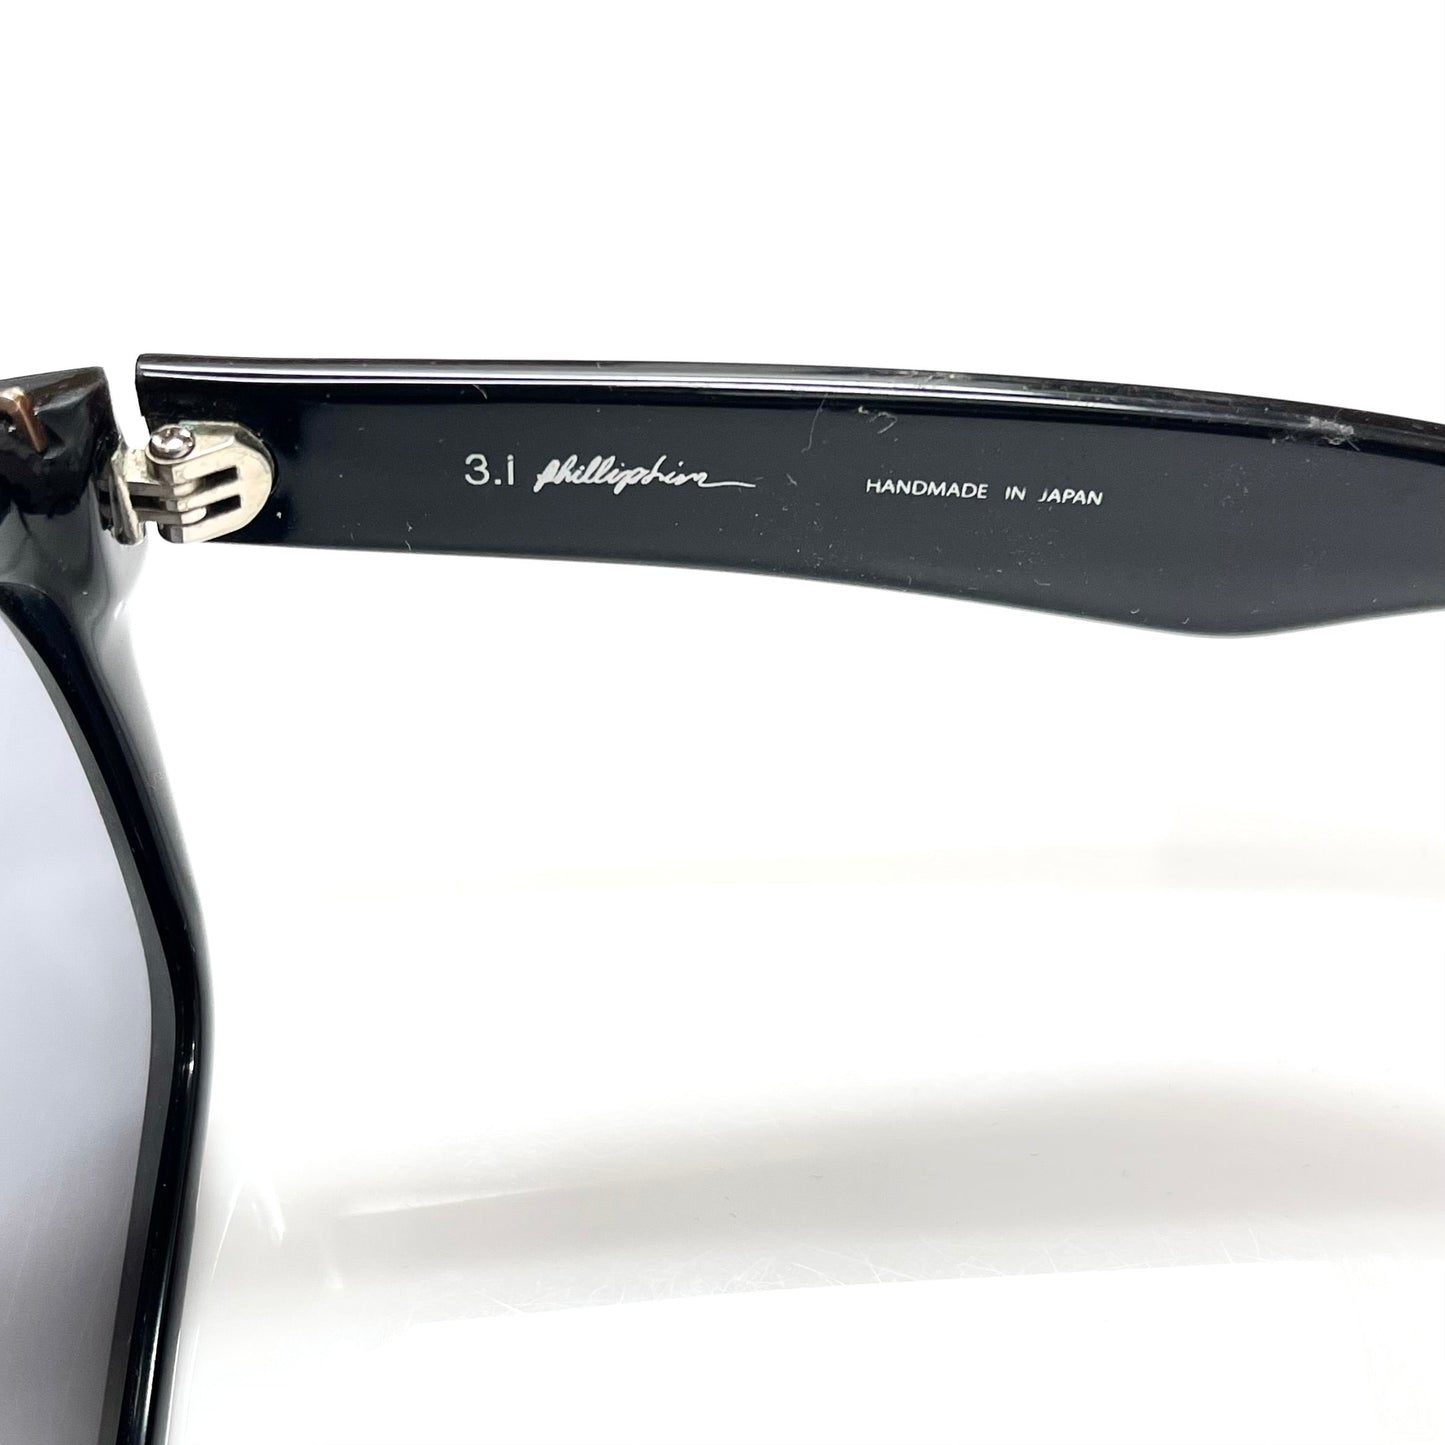 Sunglasses Luxury Designer By Phillip Lim